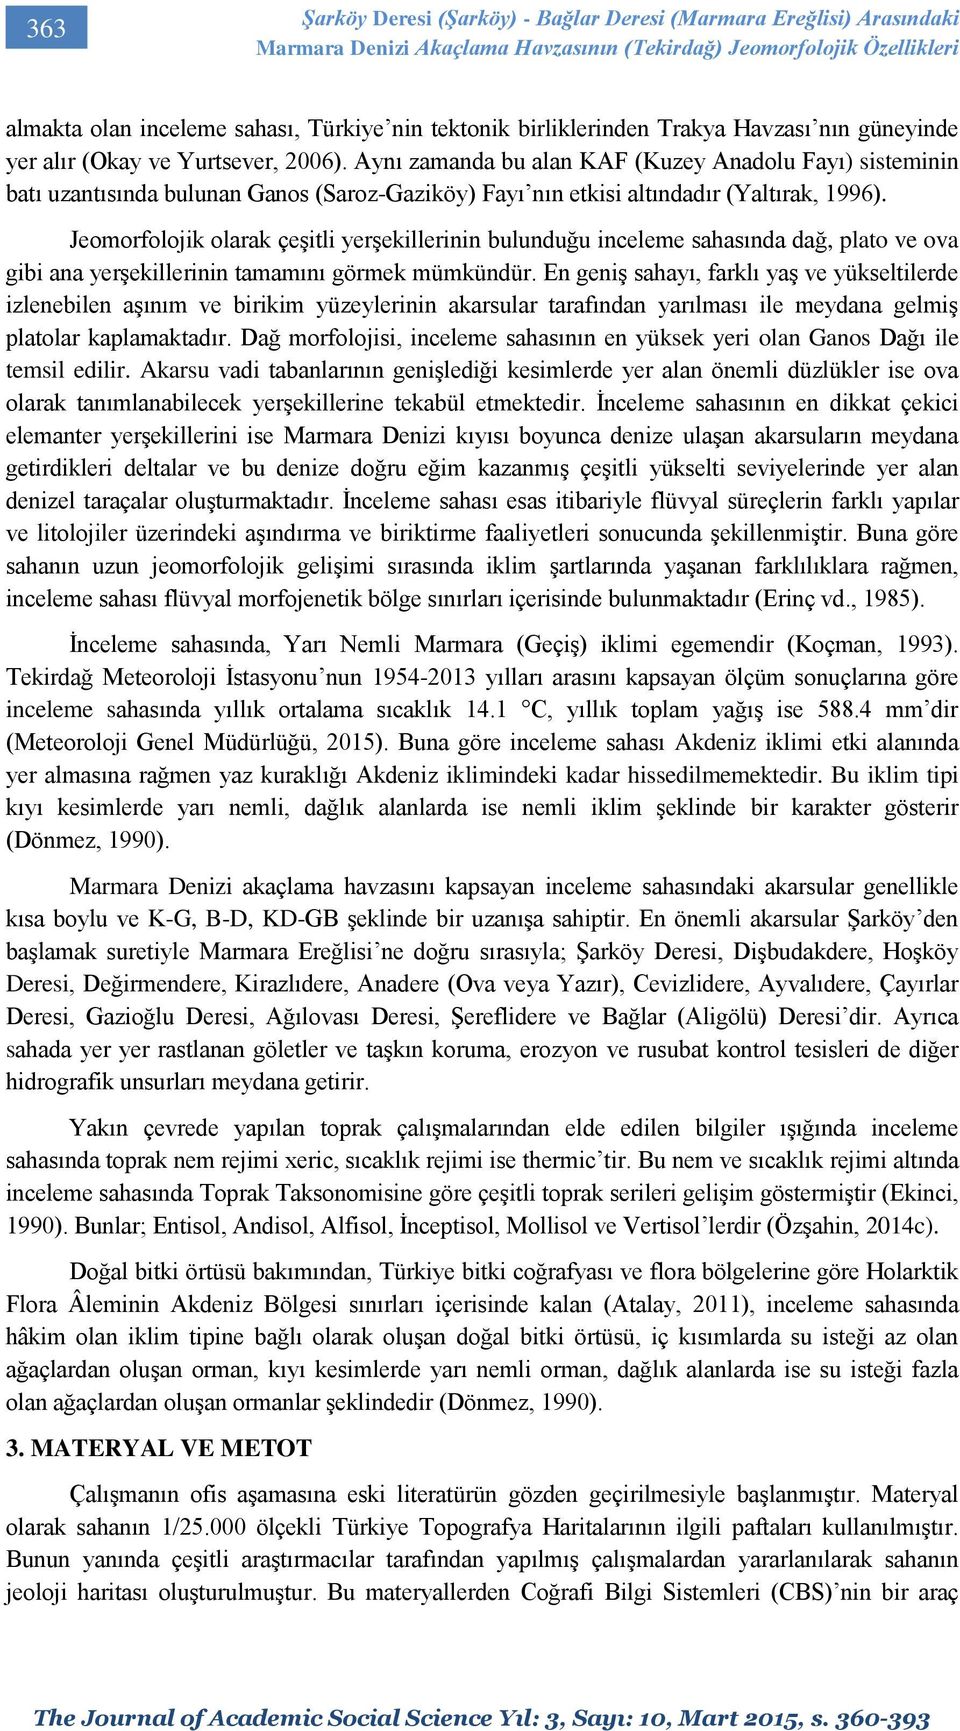 Aynı zamanda bu alan KAF (Kuzey Anadolu Fayı) sisteminin batı uzantısında bulunan Ganos (Saroz-Gaziköy) Fayı nın etkisi altındadır (Yaltırak, 1996).